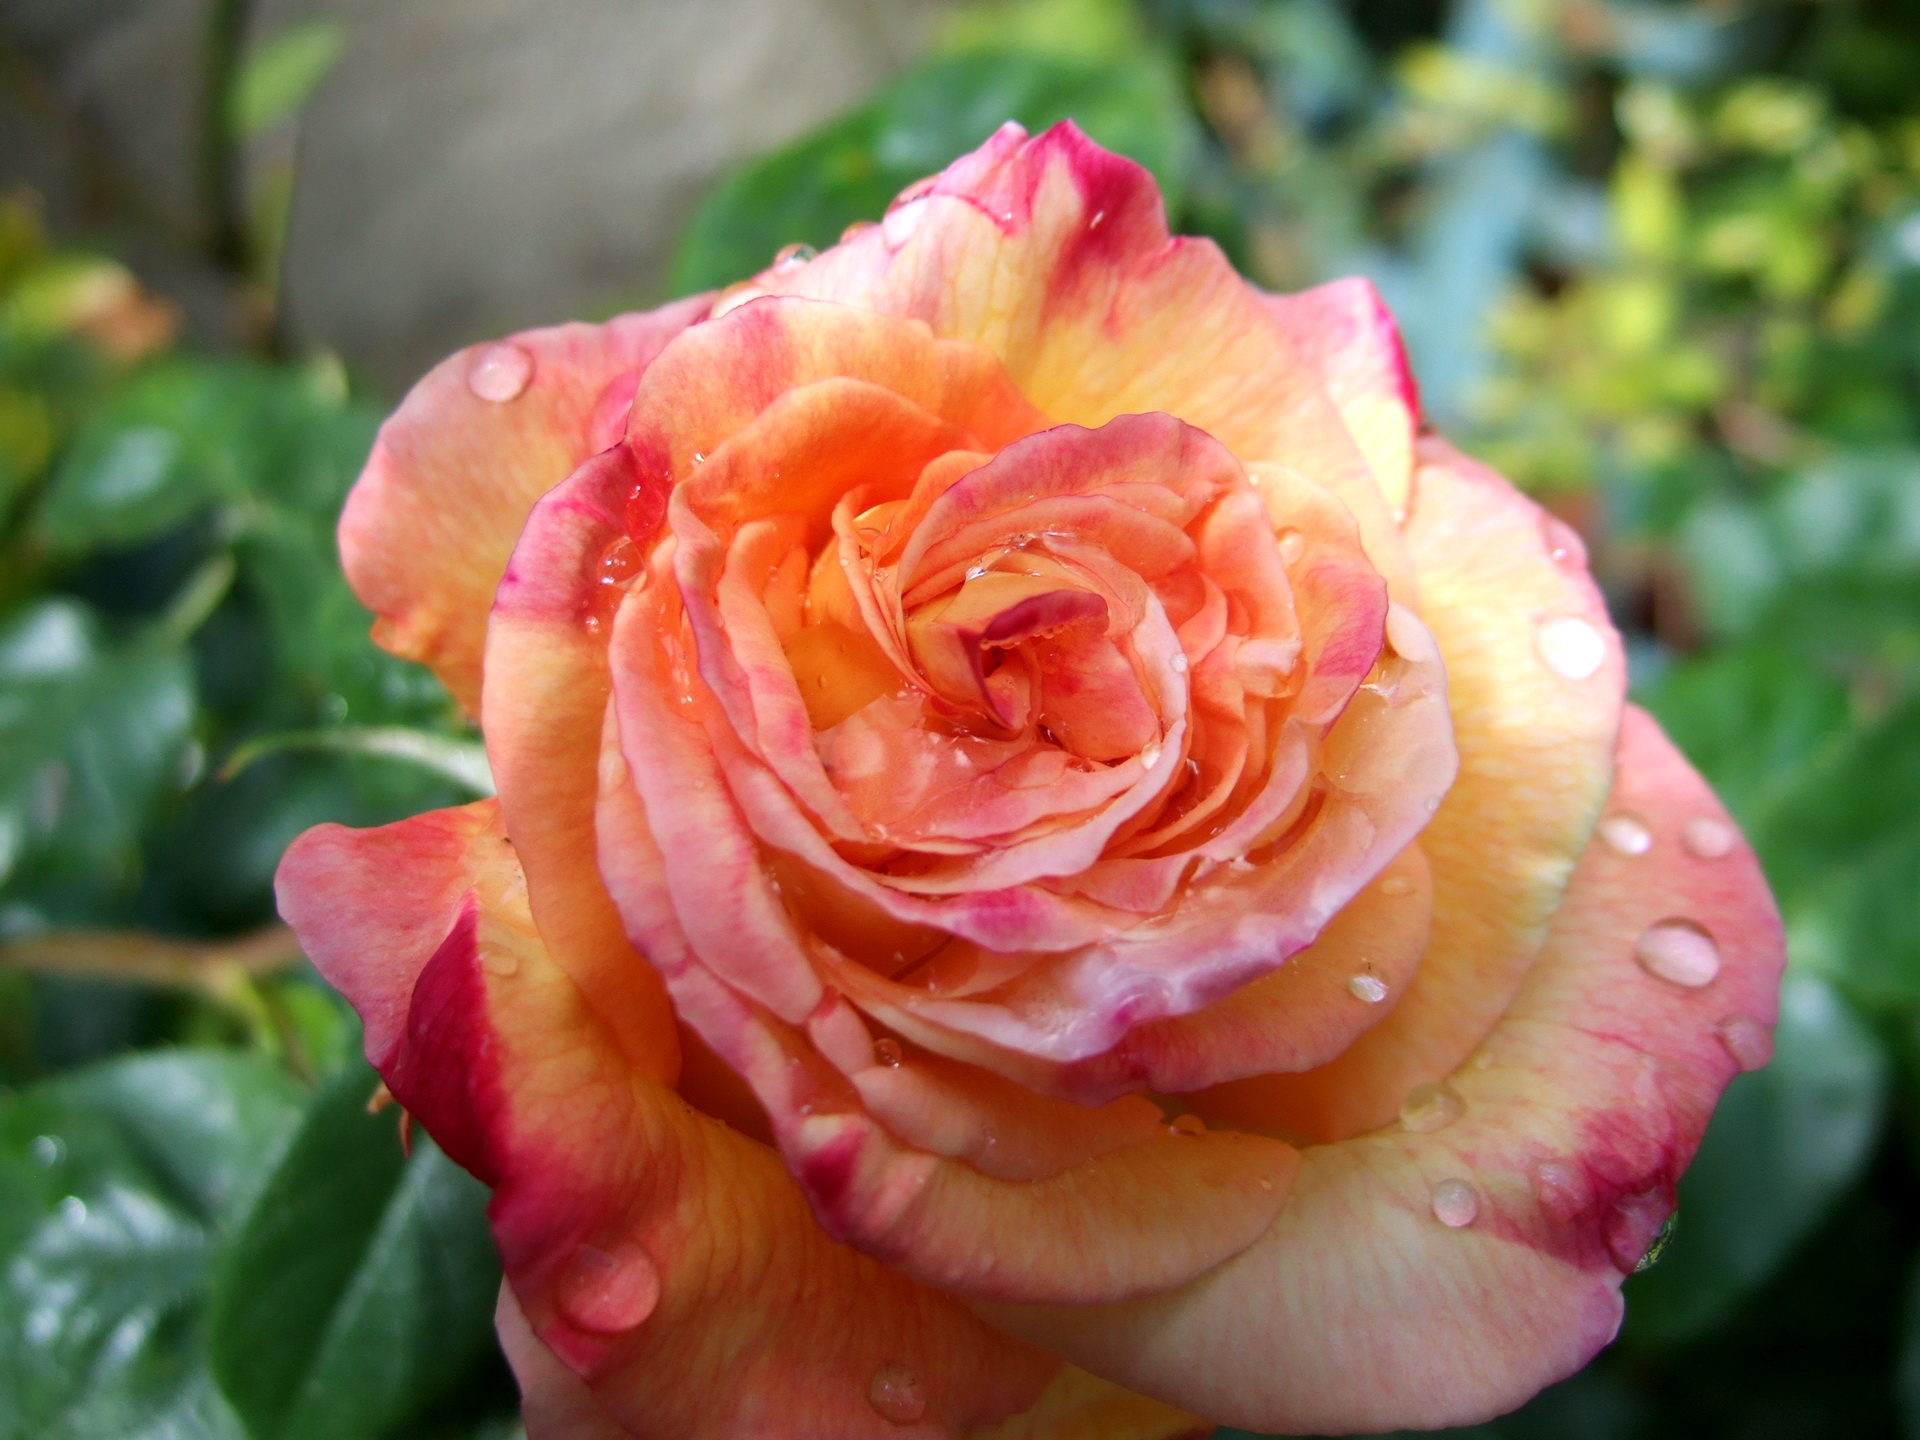 drops, rose flower, flower, macro, rose, bud, close up, freshness